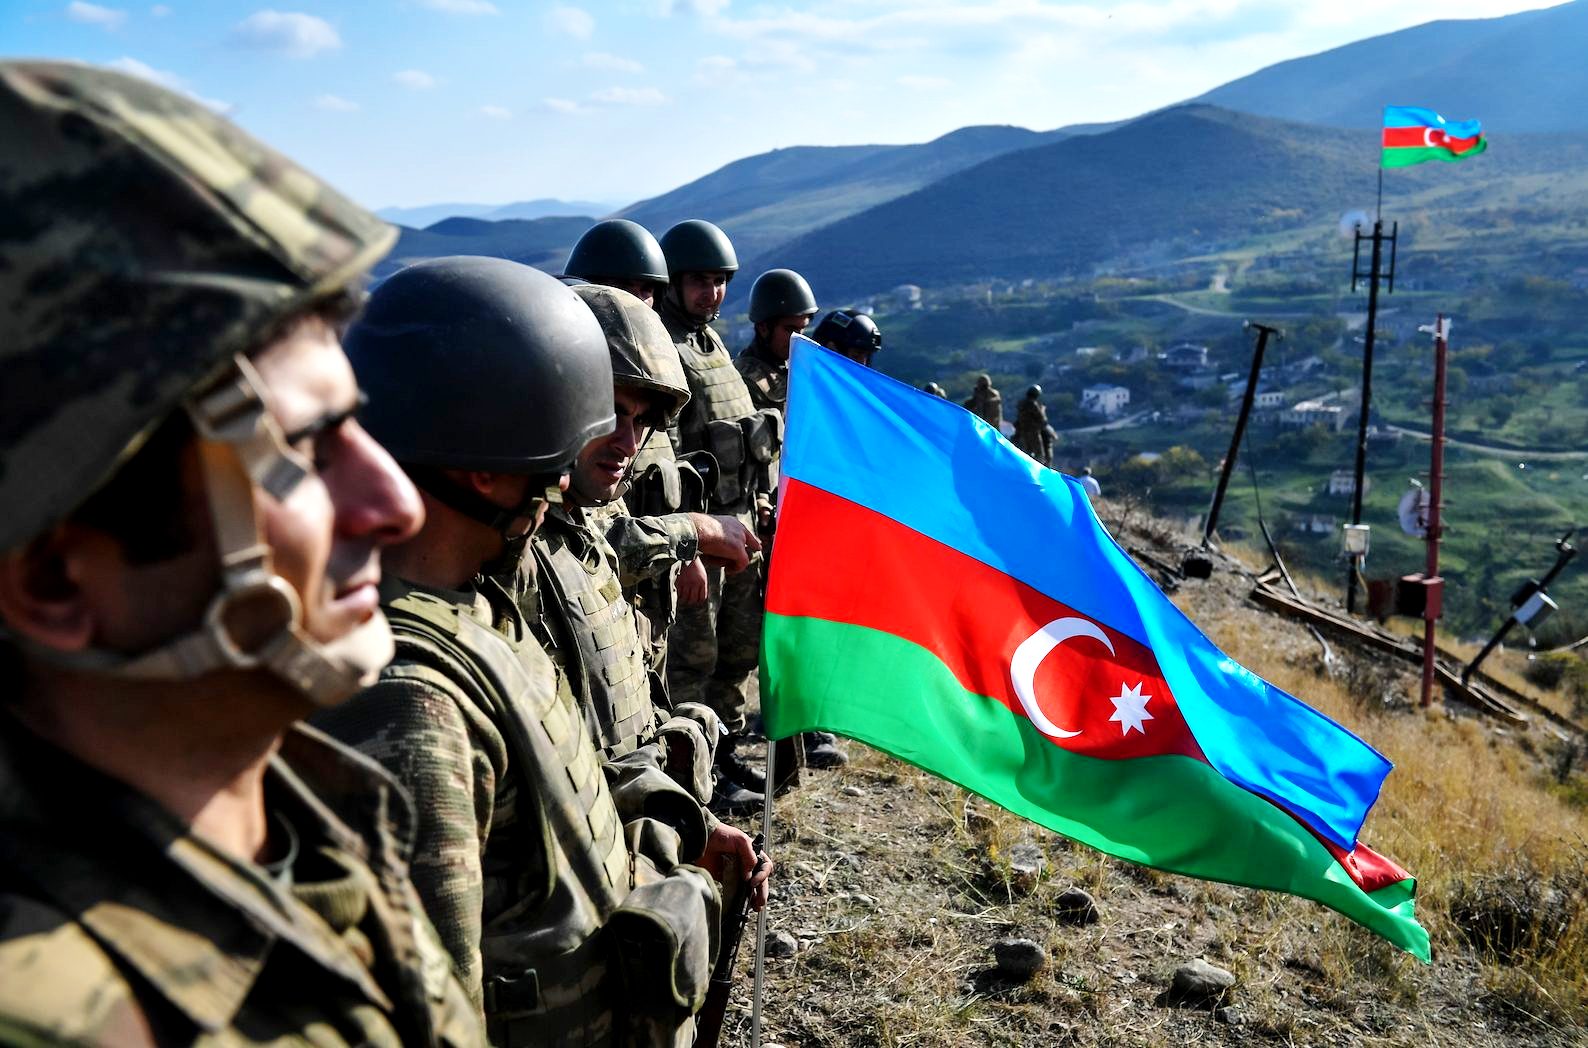 Ναγκόρνο Καραμπάχ: Οι Αζέροι μπήκαν στη Σούσα, το τελευταίο προπύργιο των Αρμενίων, πριν την πρωτεύουσα Στεπανακέρτ